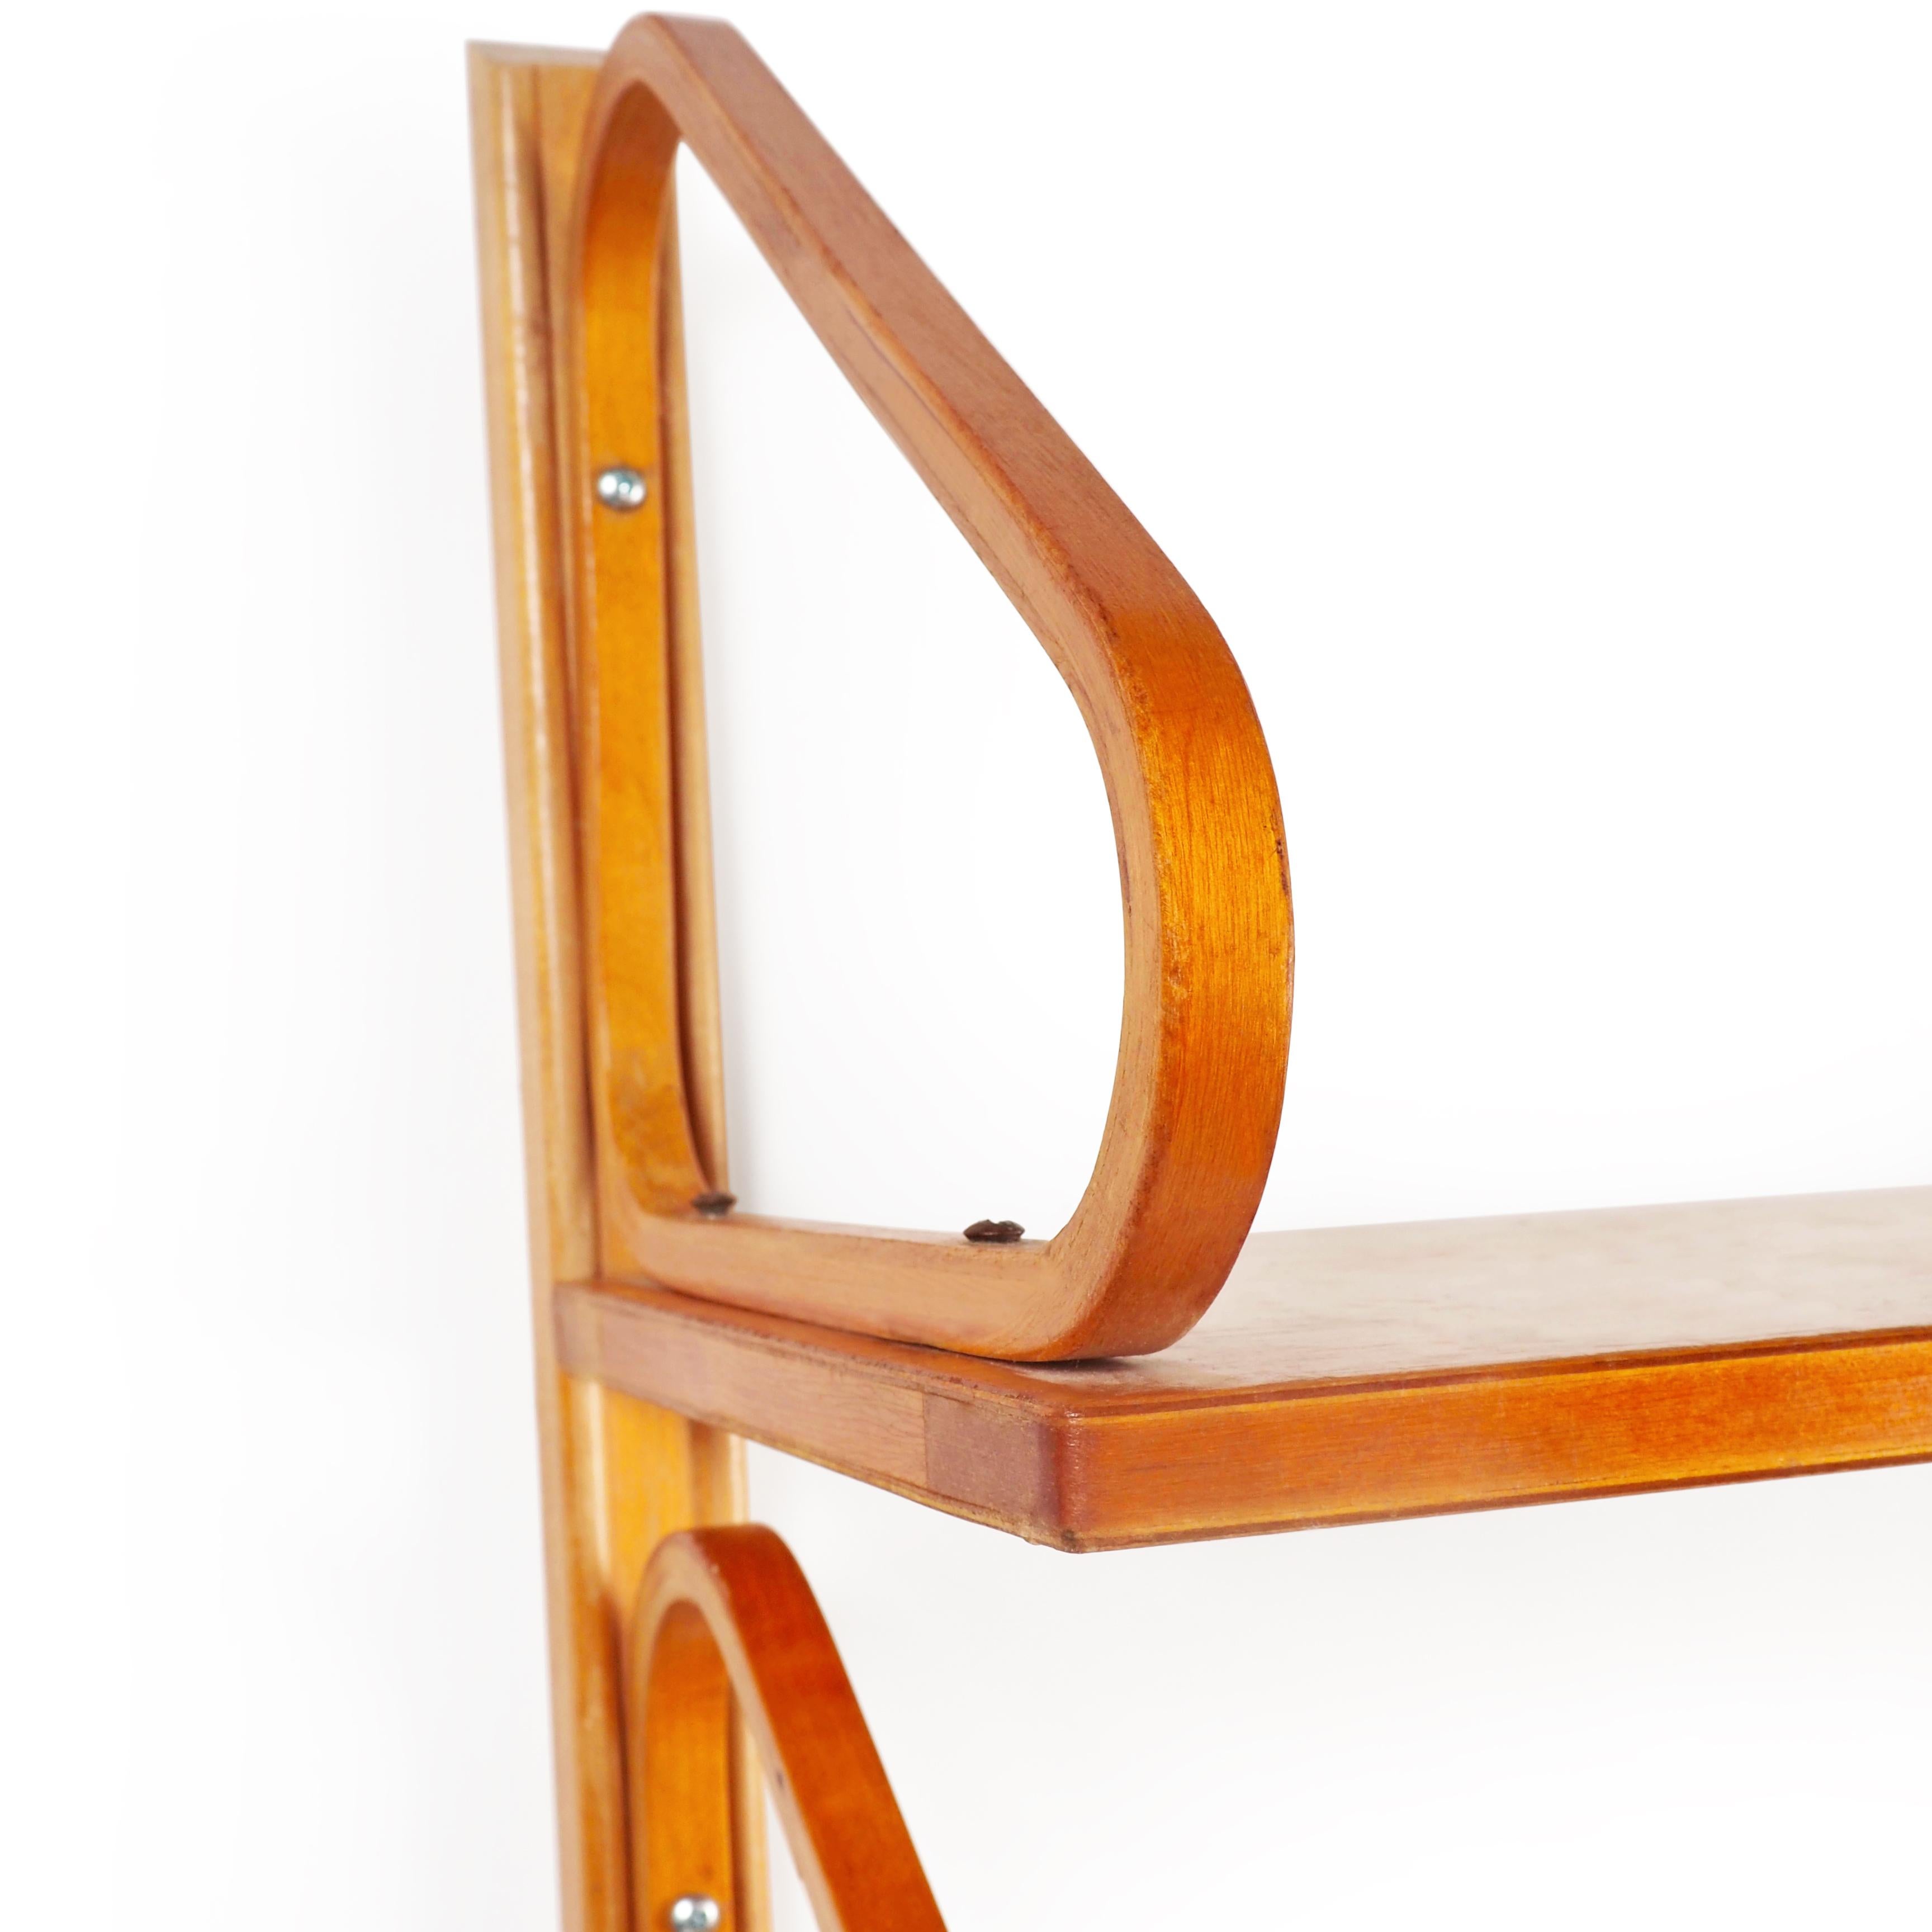 Nachdem der finnische Architekt Alvar Aalto seine Karriere in Finnland während der frühen Moderne in den 1930er Jahren begonnen hatte, begann er in den vierziger Jahren mit der Produktion seiner Möbel in Schweden. Die Fabrik trug den Namen Aalto